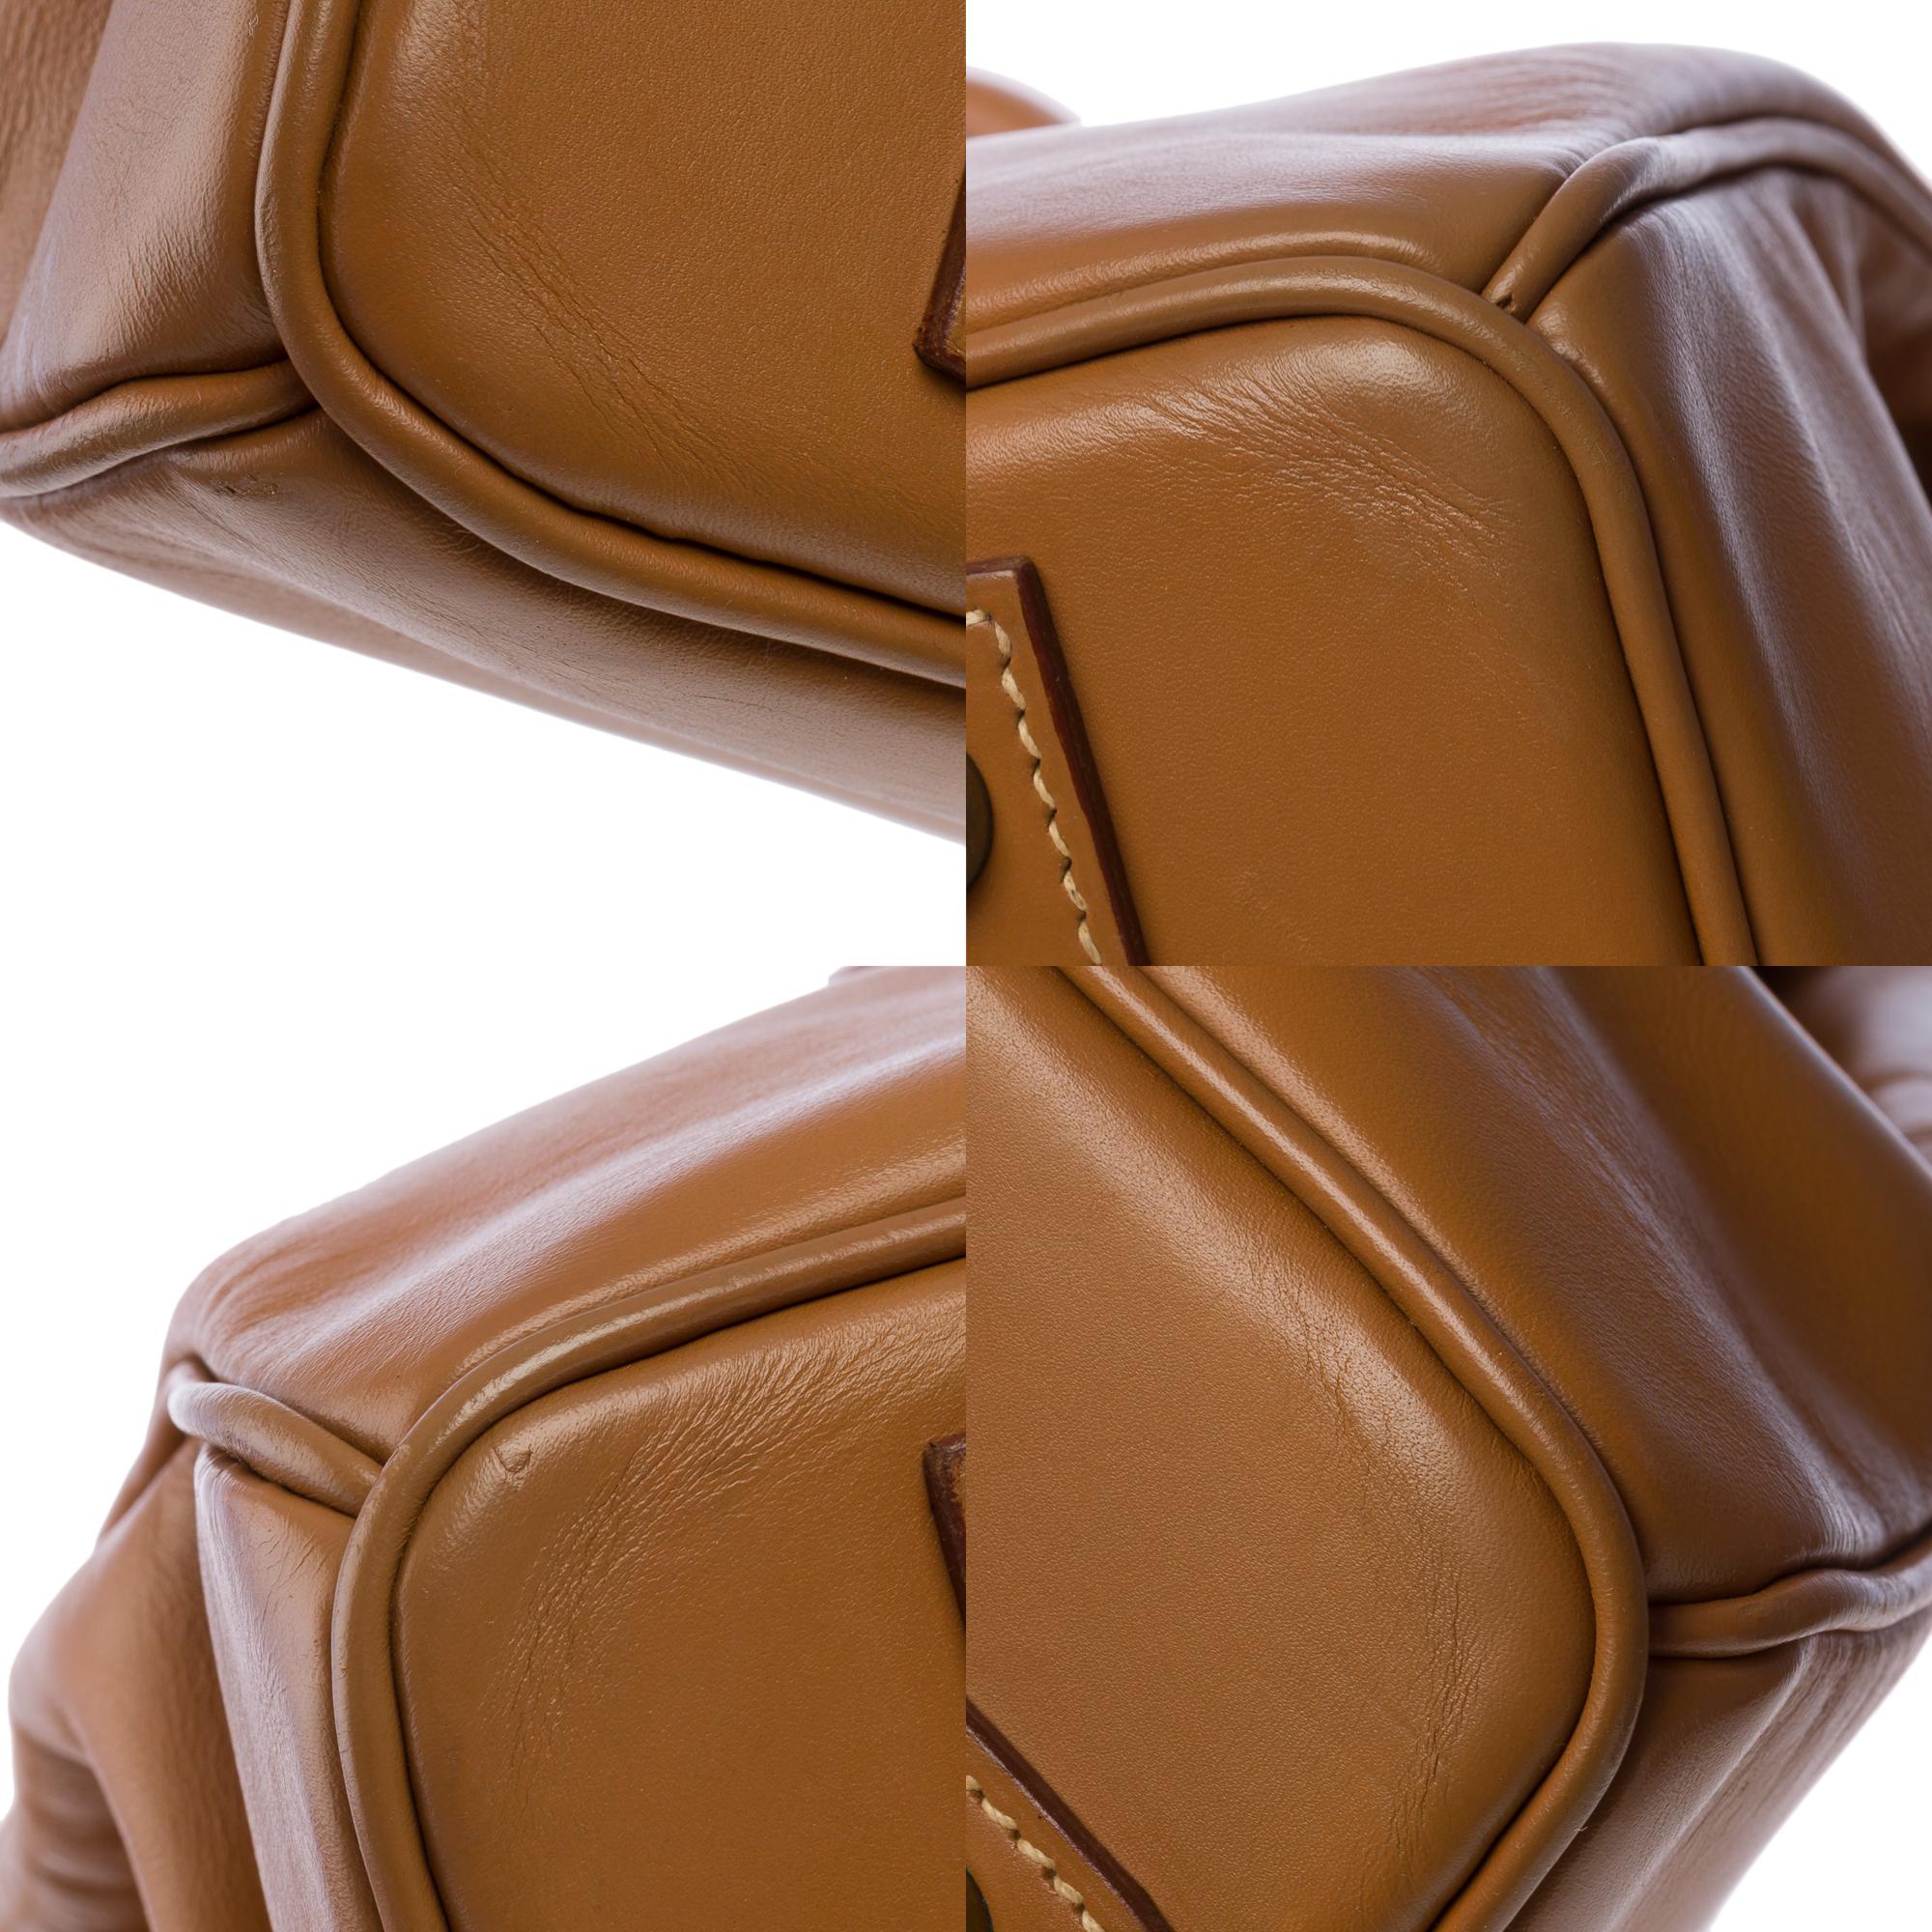 Fantastic Hermes Birkin 40 handbag in Camel (Gold) Chamonix leather, GHW For Sale 6